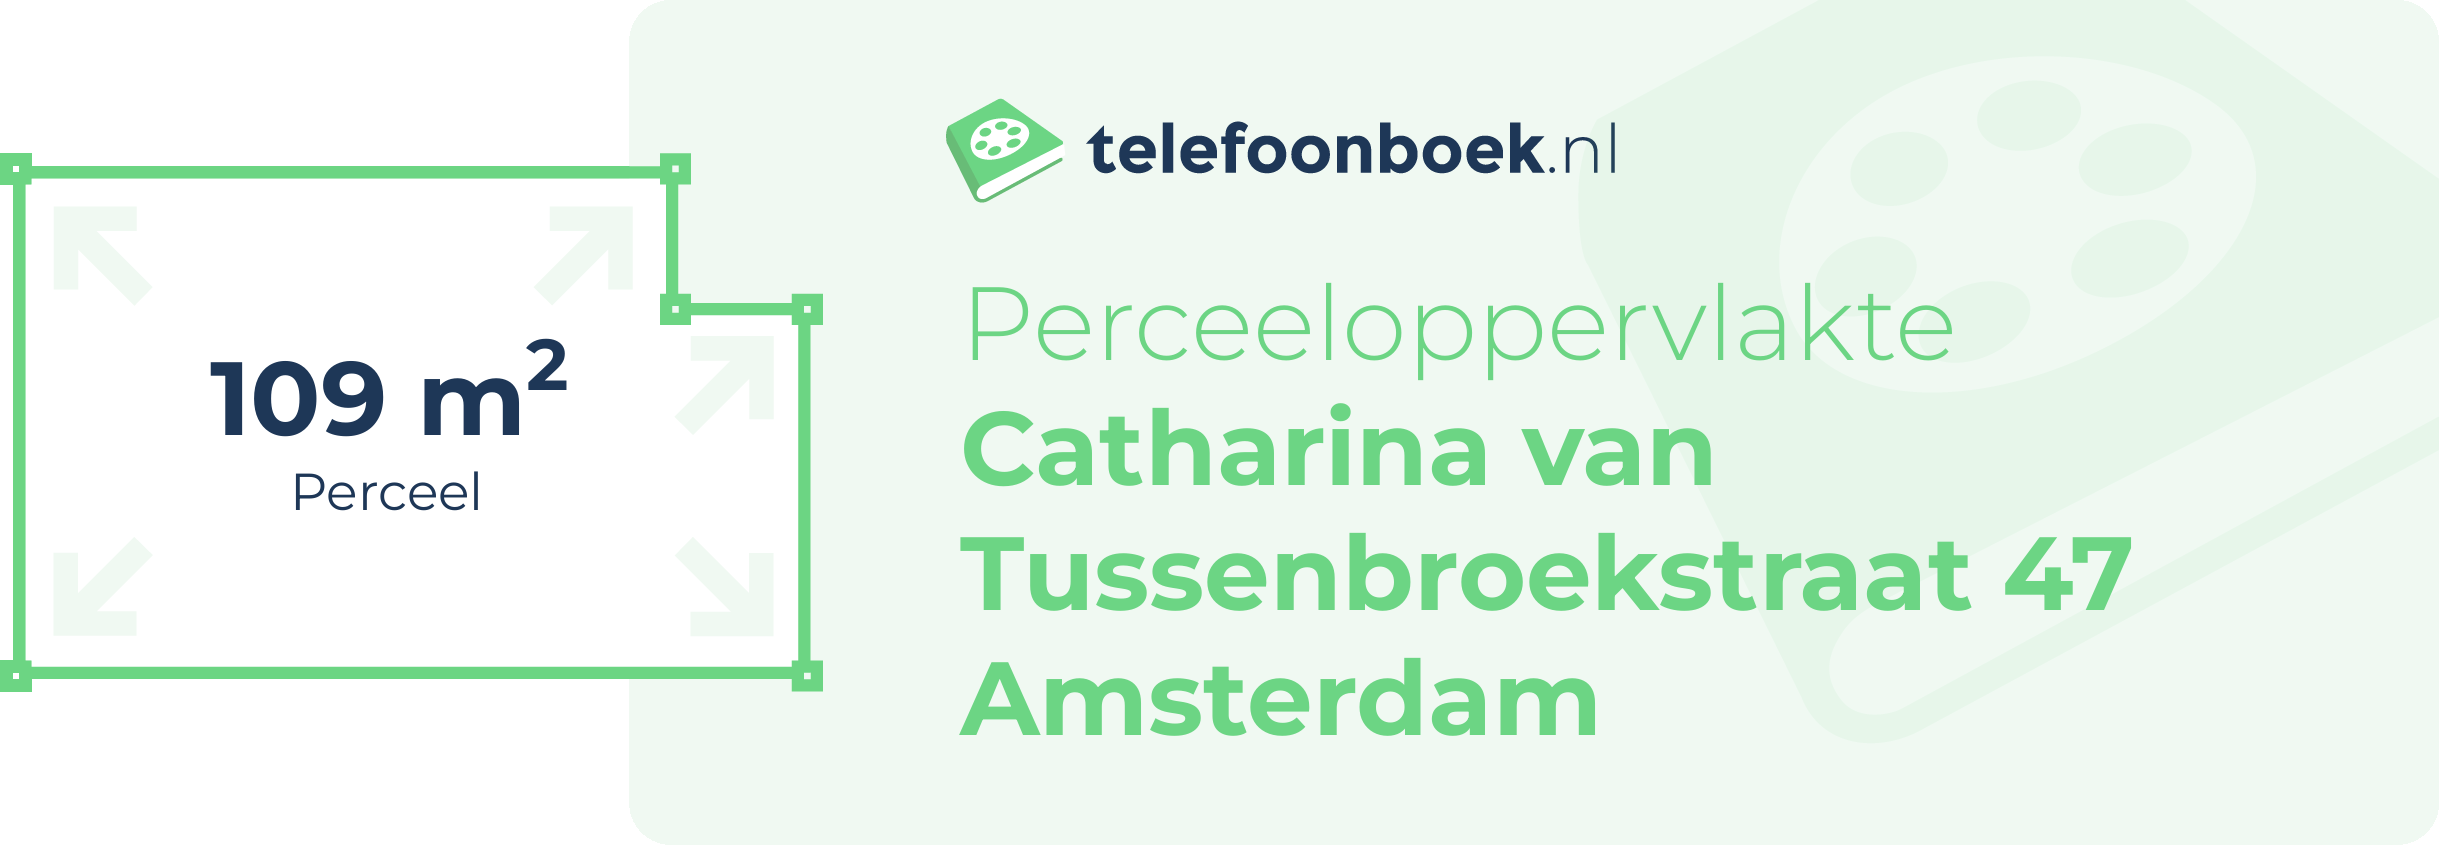 Perceeloppervlakte Catharina Van Tussenbroekstraat 47 Amsterdam